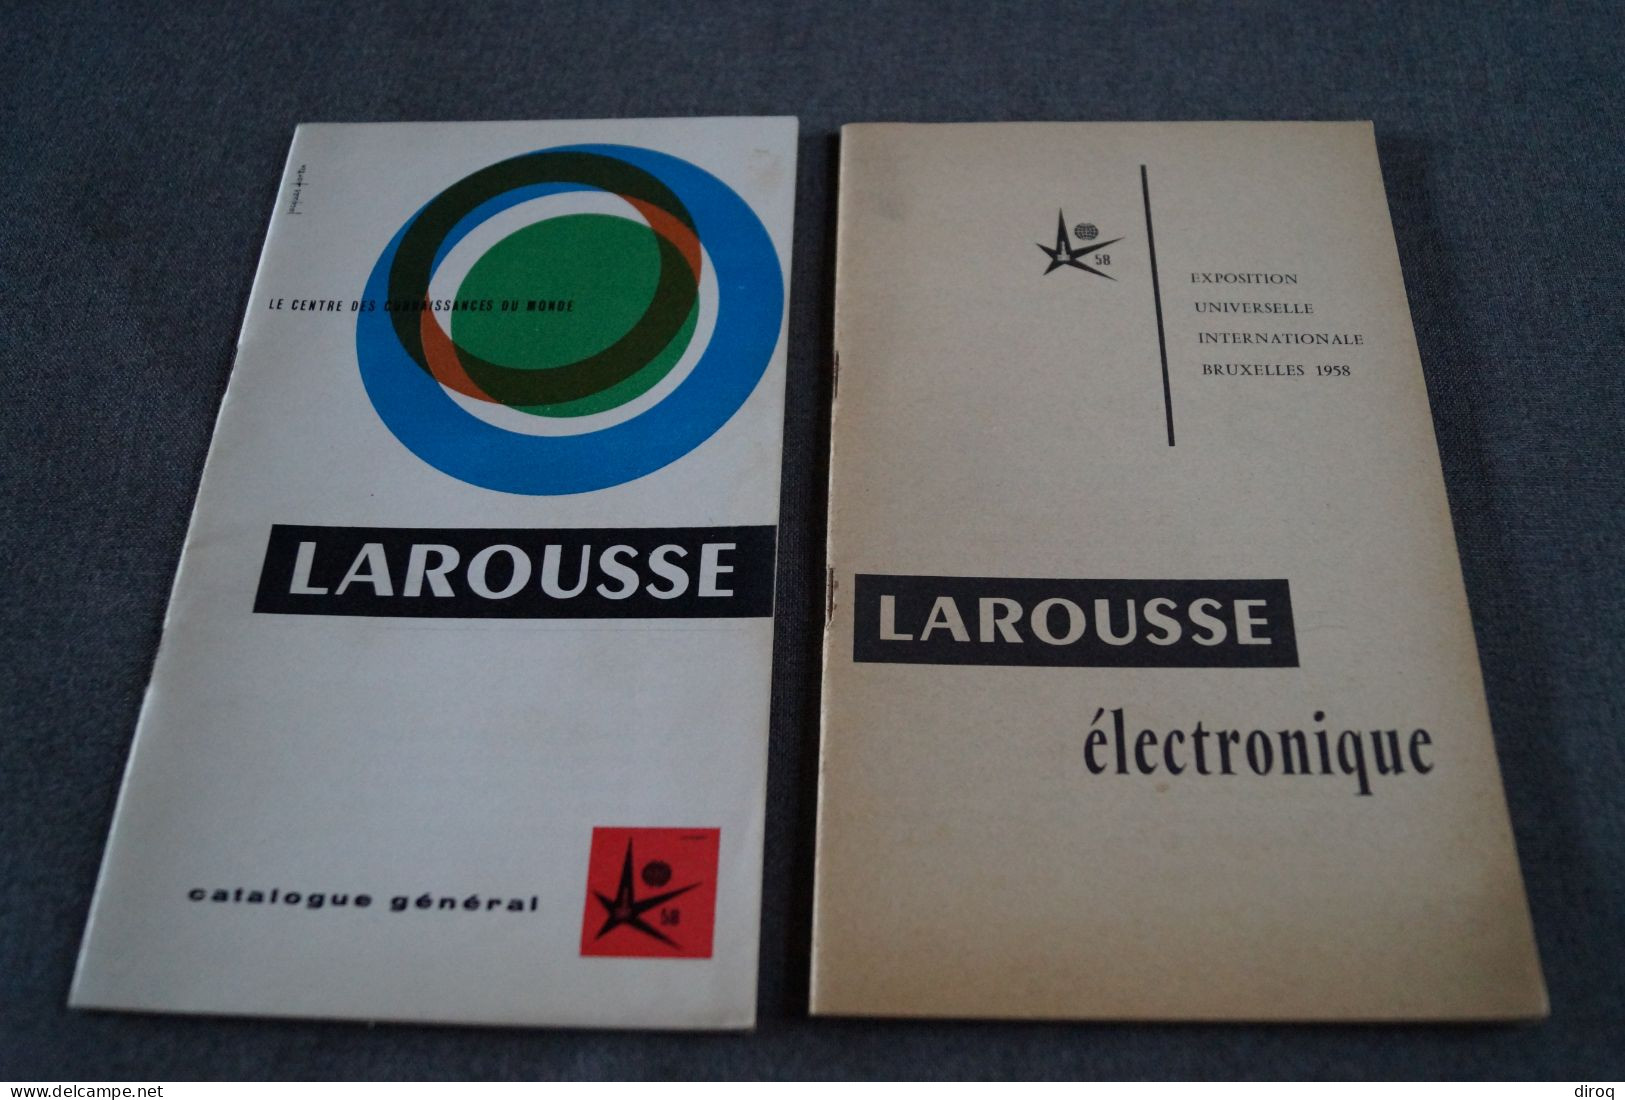 Expo 1958, Bruxelles,publicitaire,Larousse,2 Ouvrages,44 Page Et 34 Pages,20,5 Cm./12,5 Cm. - Werbung